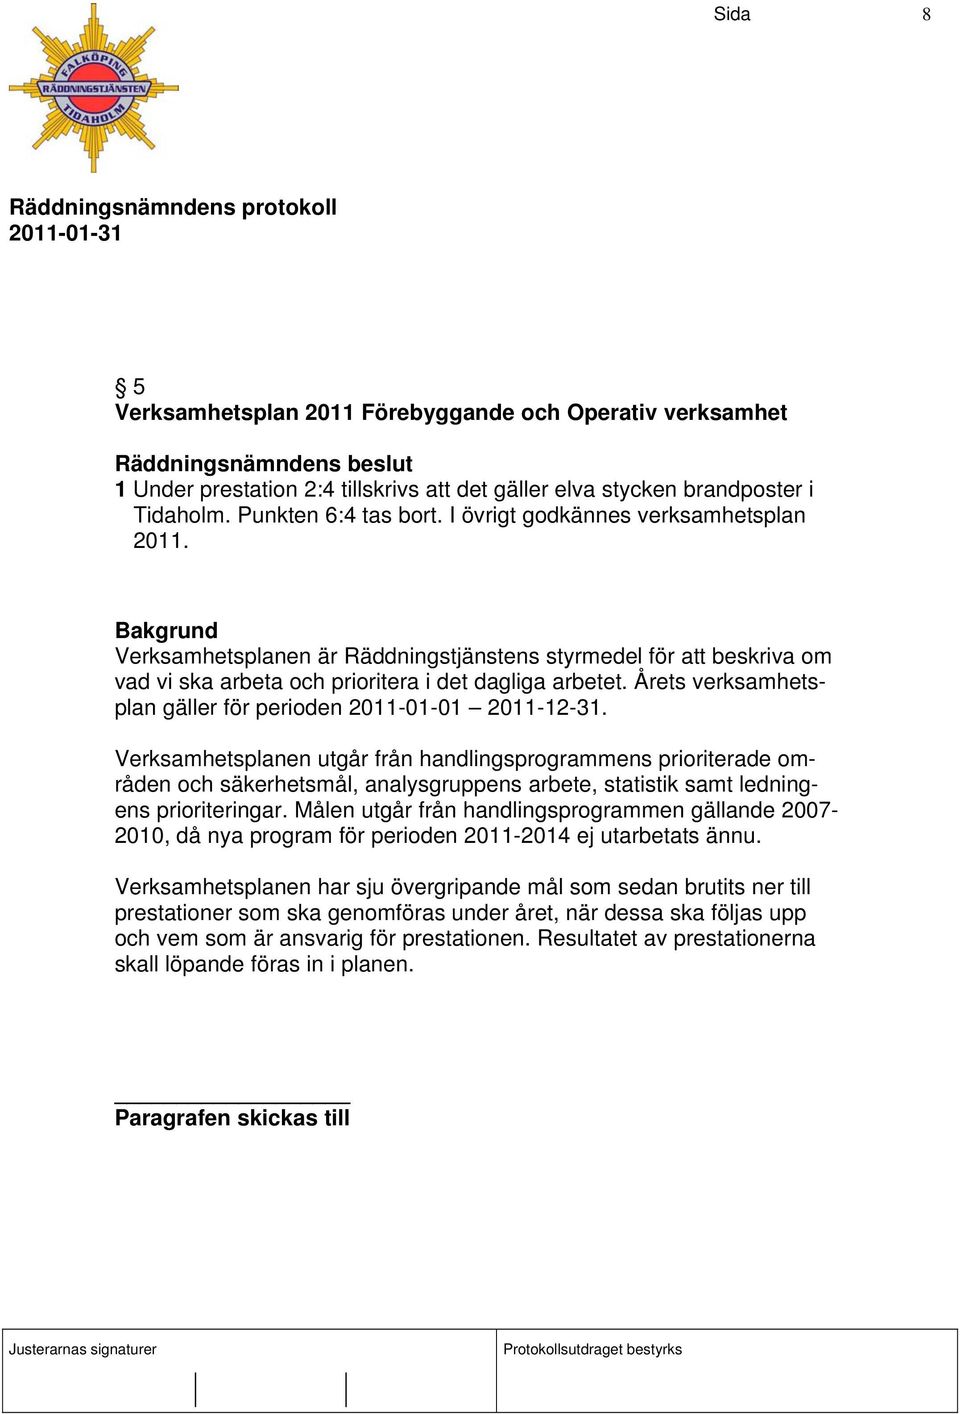 Årets verksamhetsplan gäller för perioden 2011-01-01 2011-12-31.